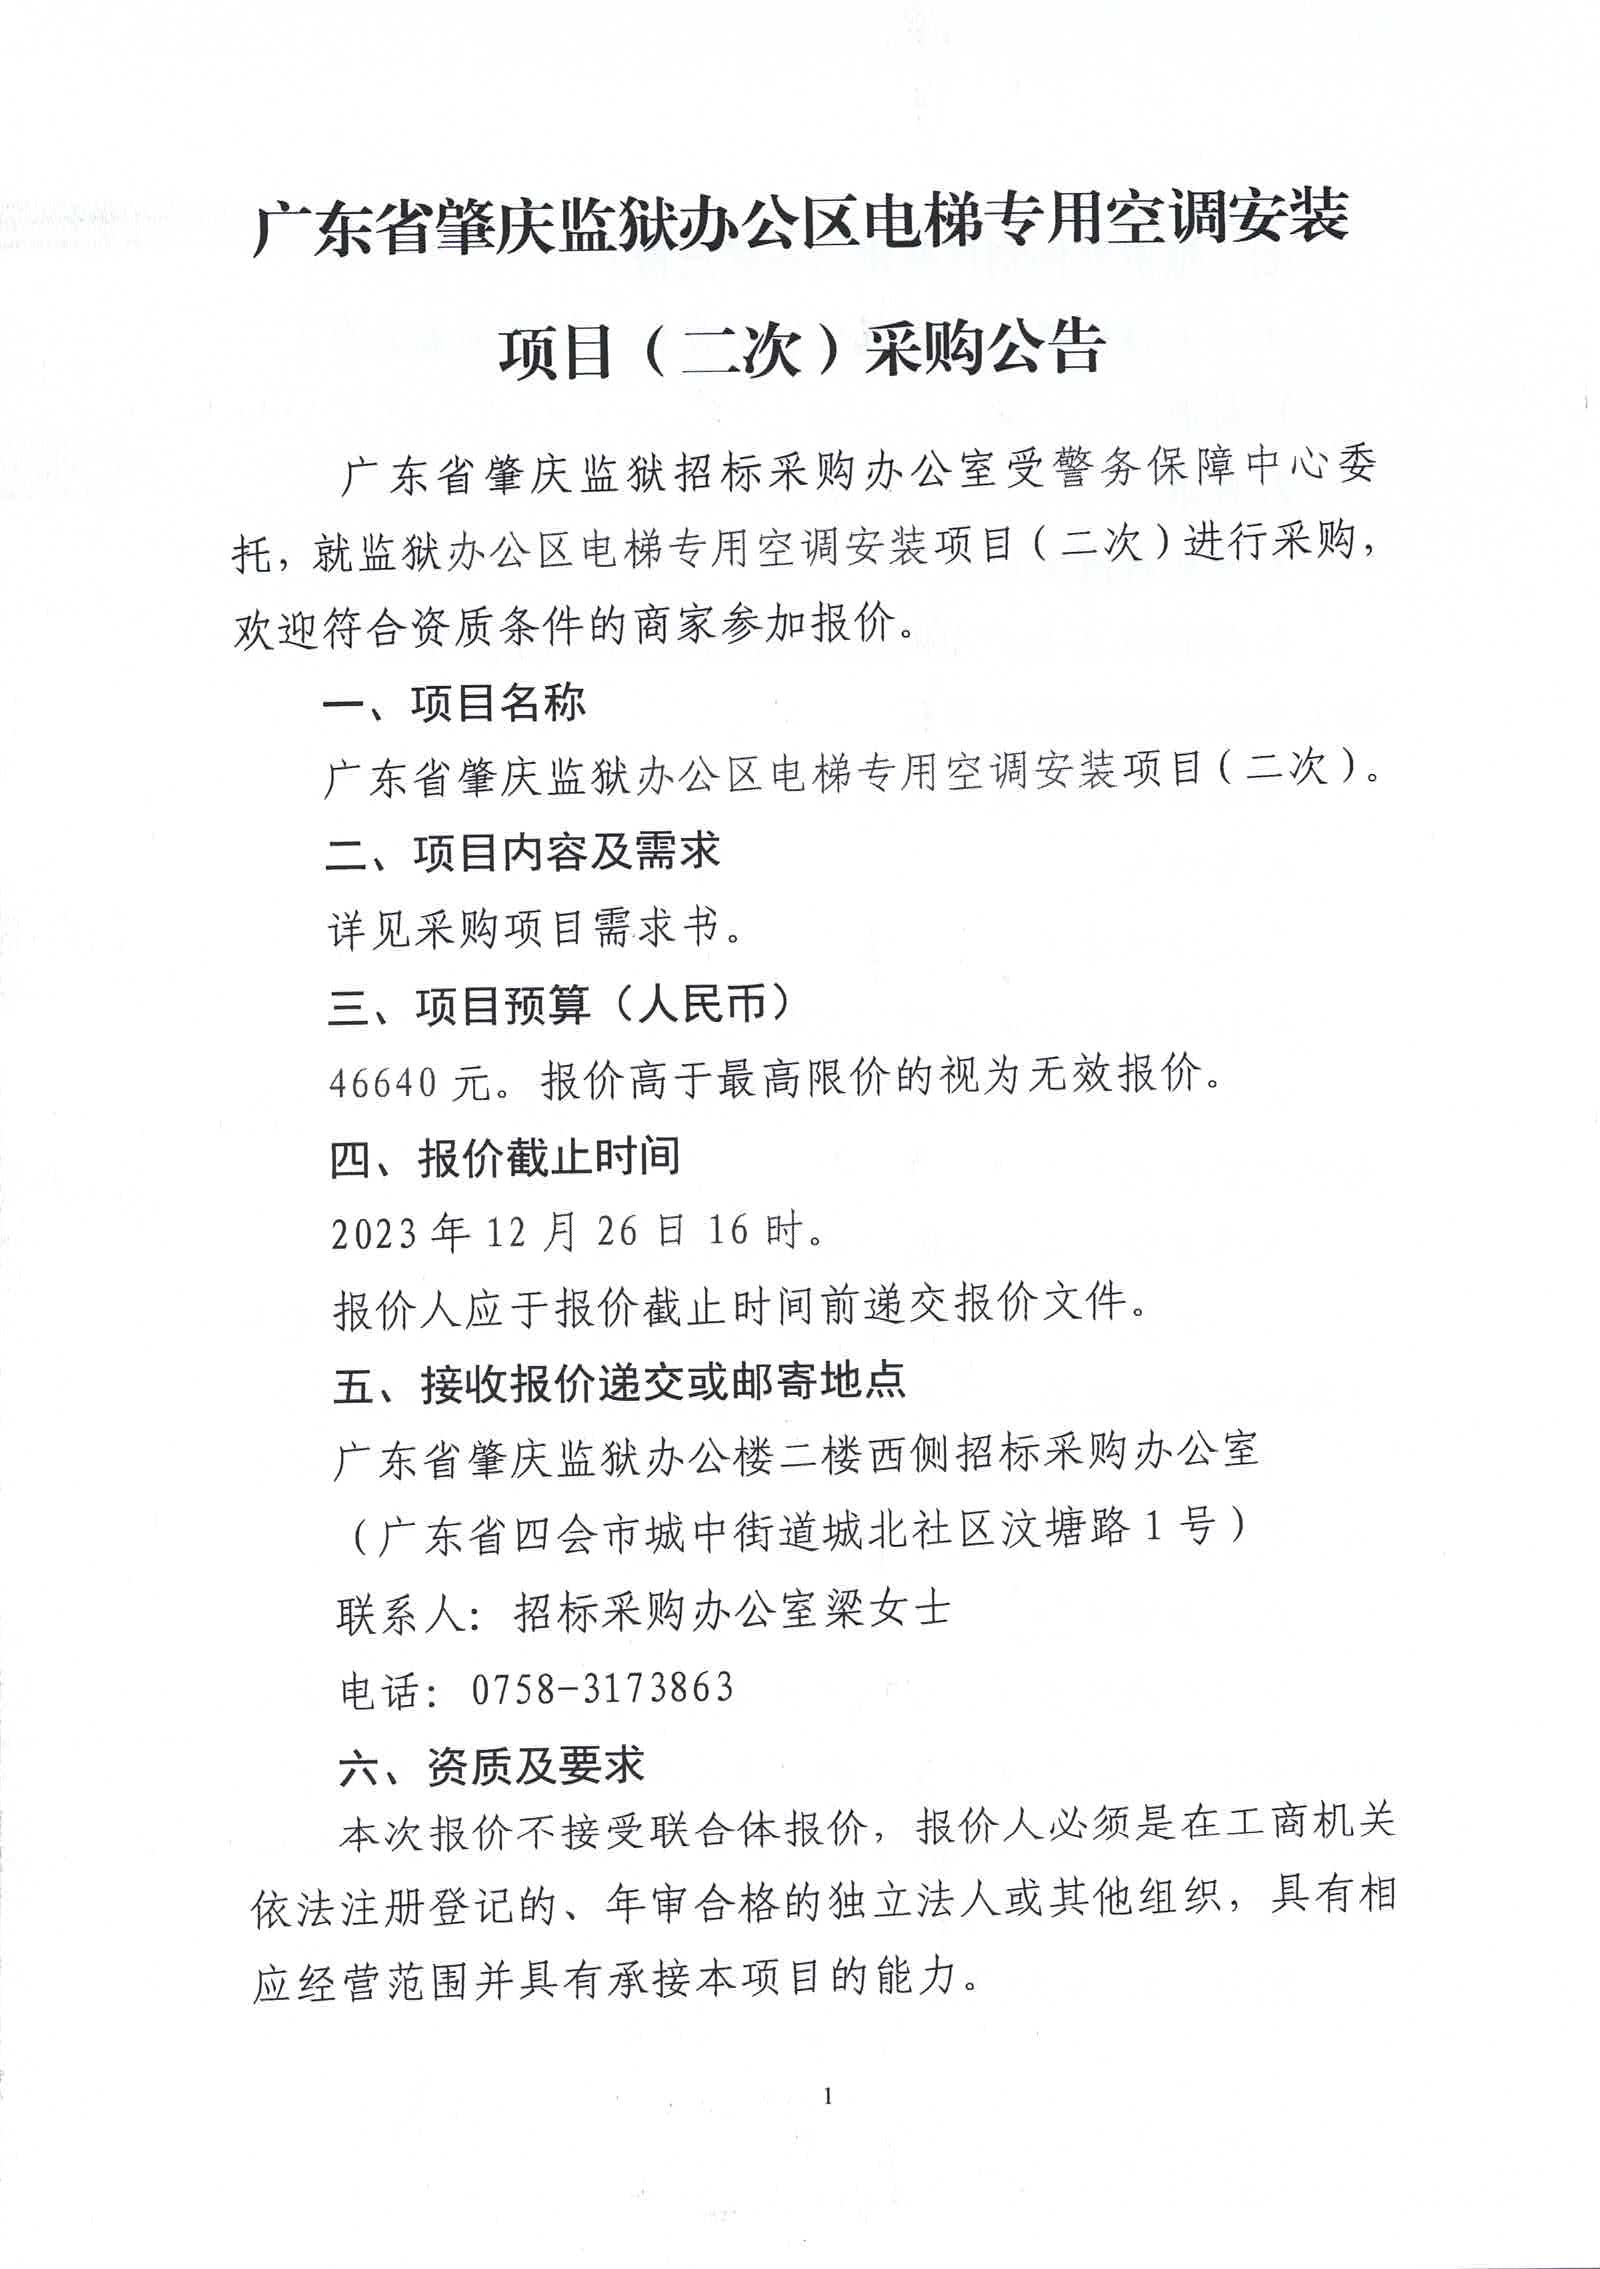 广东省肇庆监狱办公区电梯专用空调安装项目（二次）采购公告1.jpg/